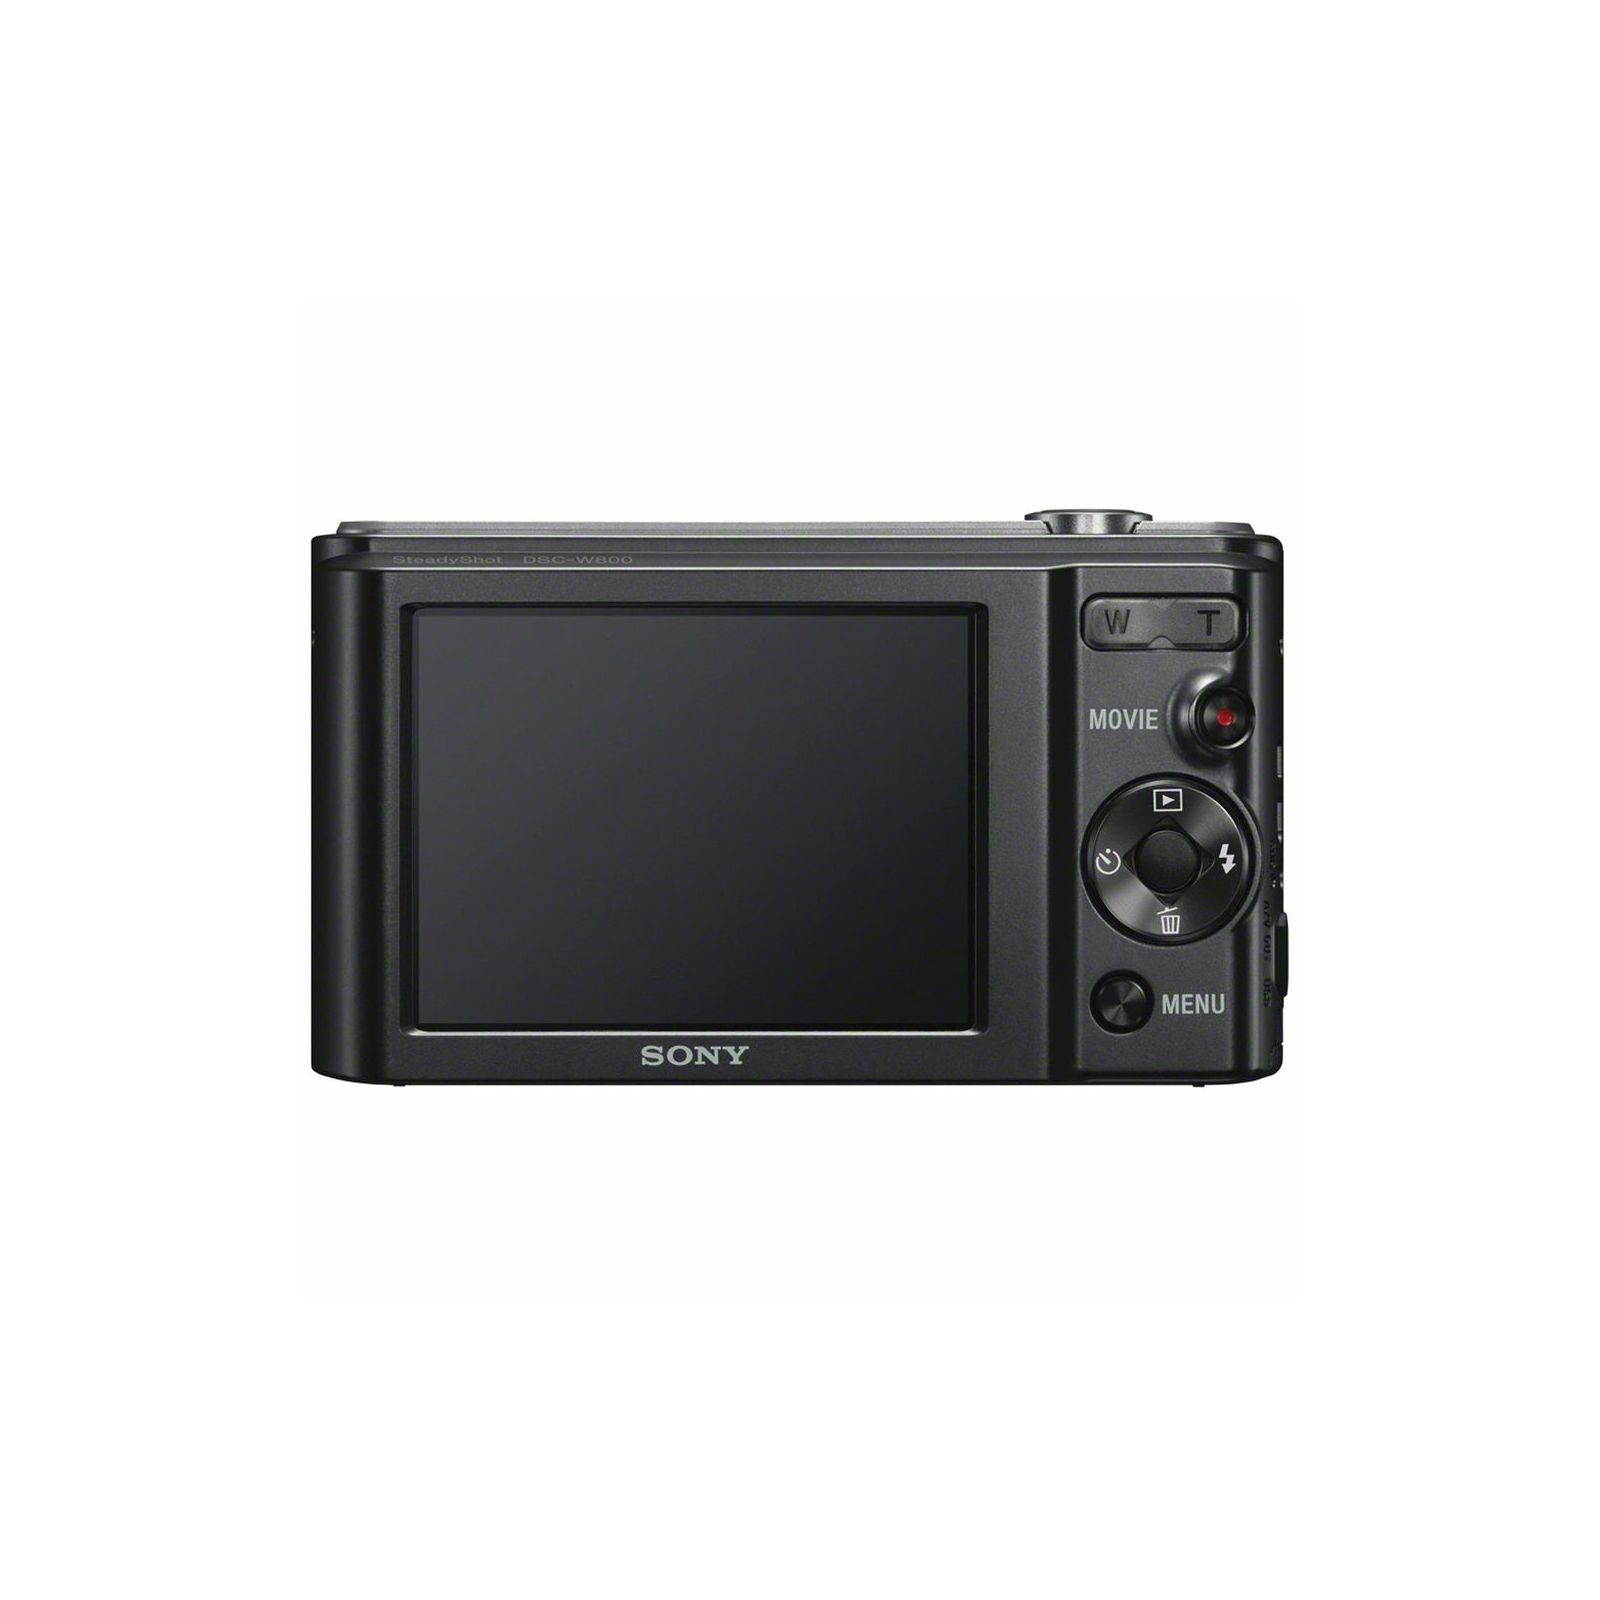 Sony Cyber-shot DSC-W800 Black crni Digitalni fotoaparat Digital Camera DSC-W800B DSCW800B 20.1Mp 5x zoom (DSCW800B.CE3)